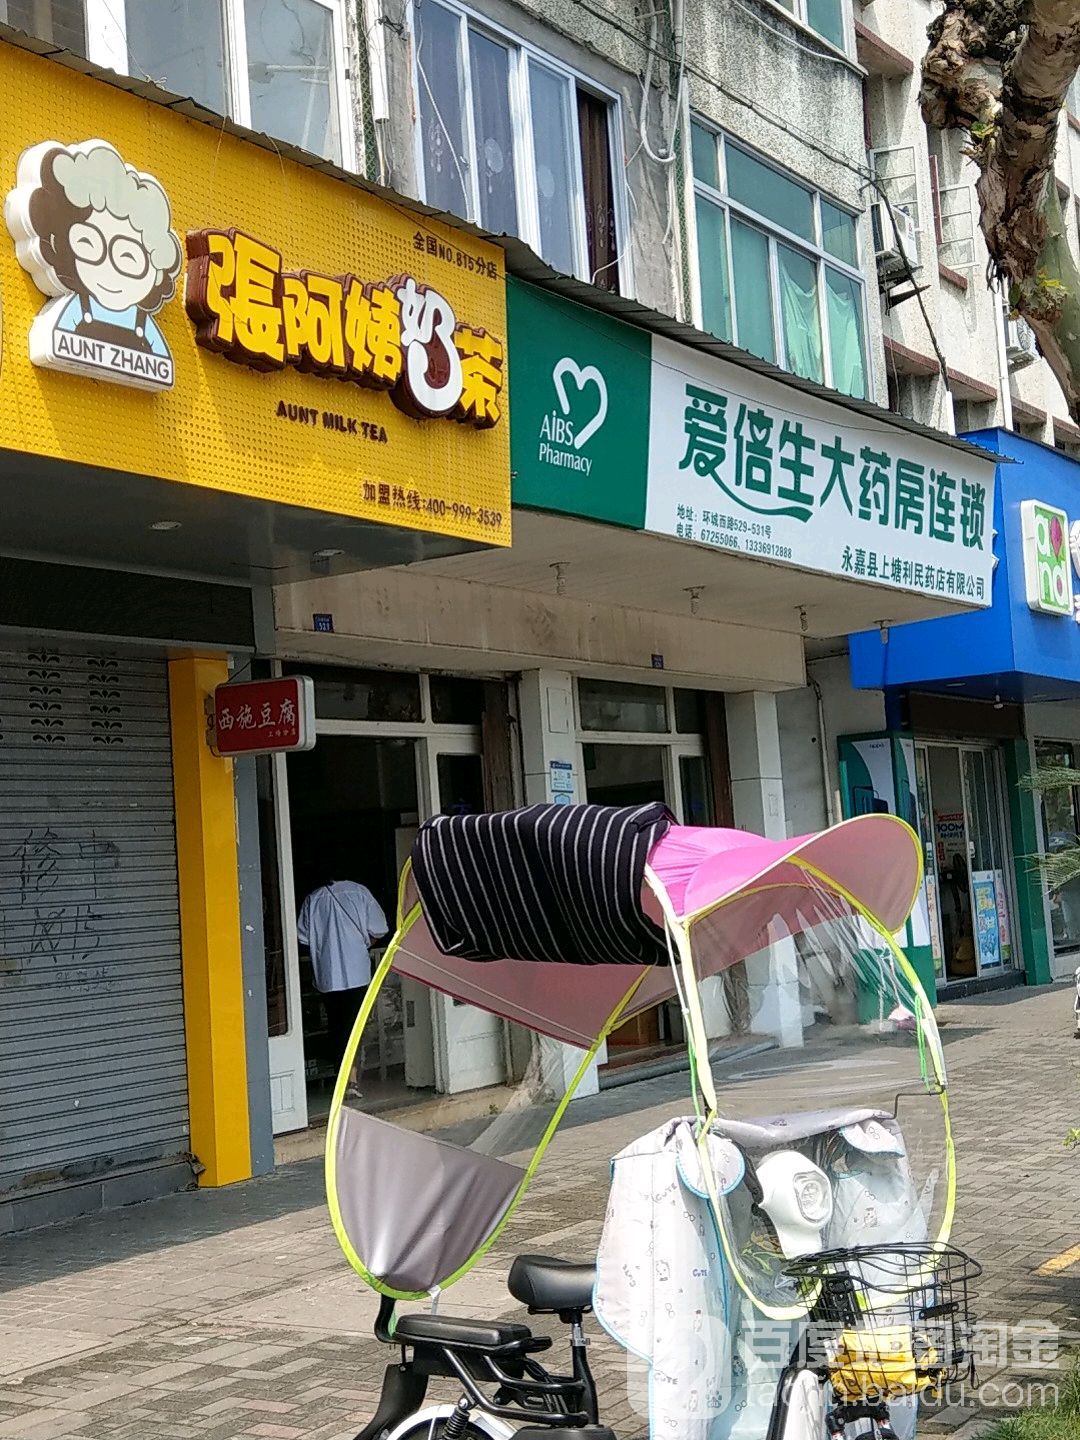 张阿姨奶茶(上塘环城西路店)